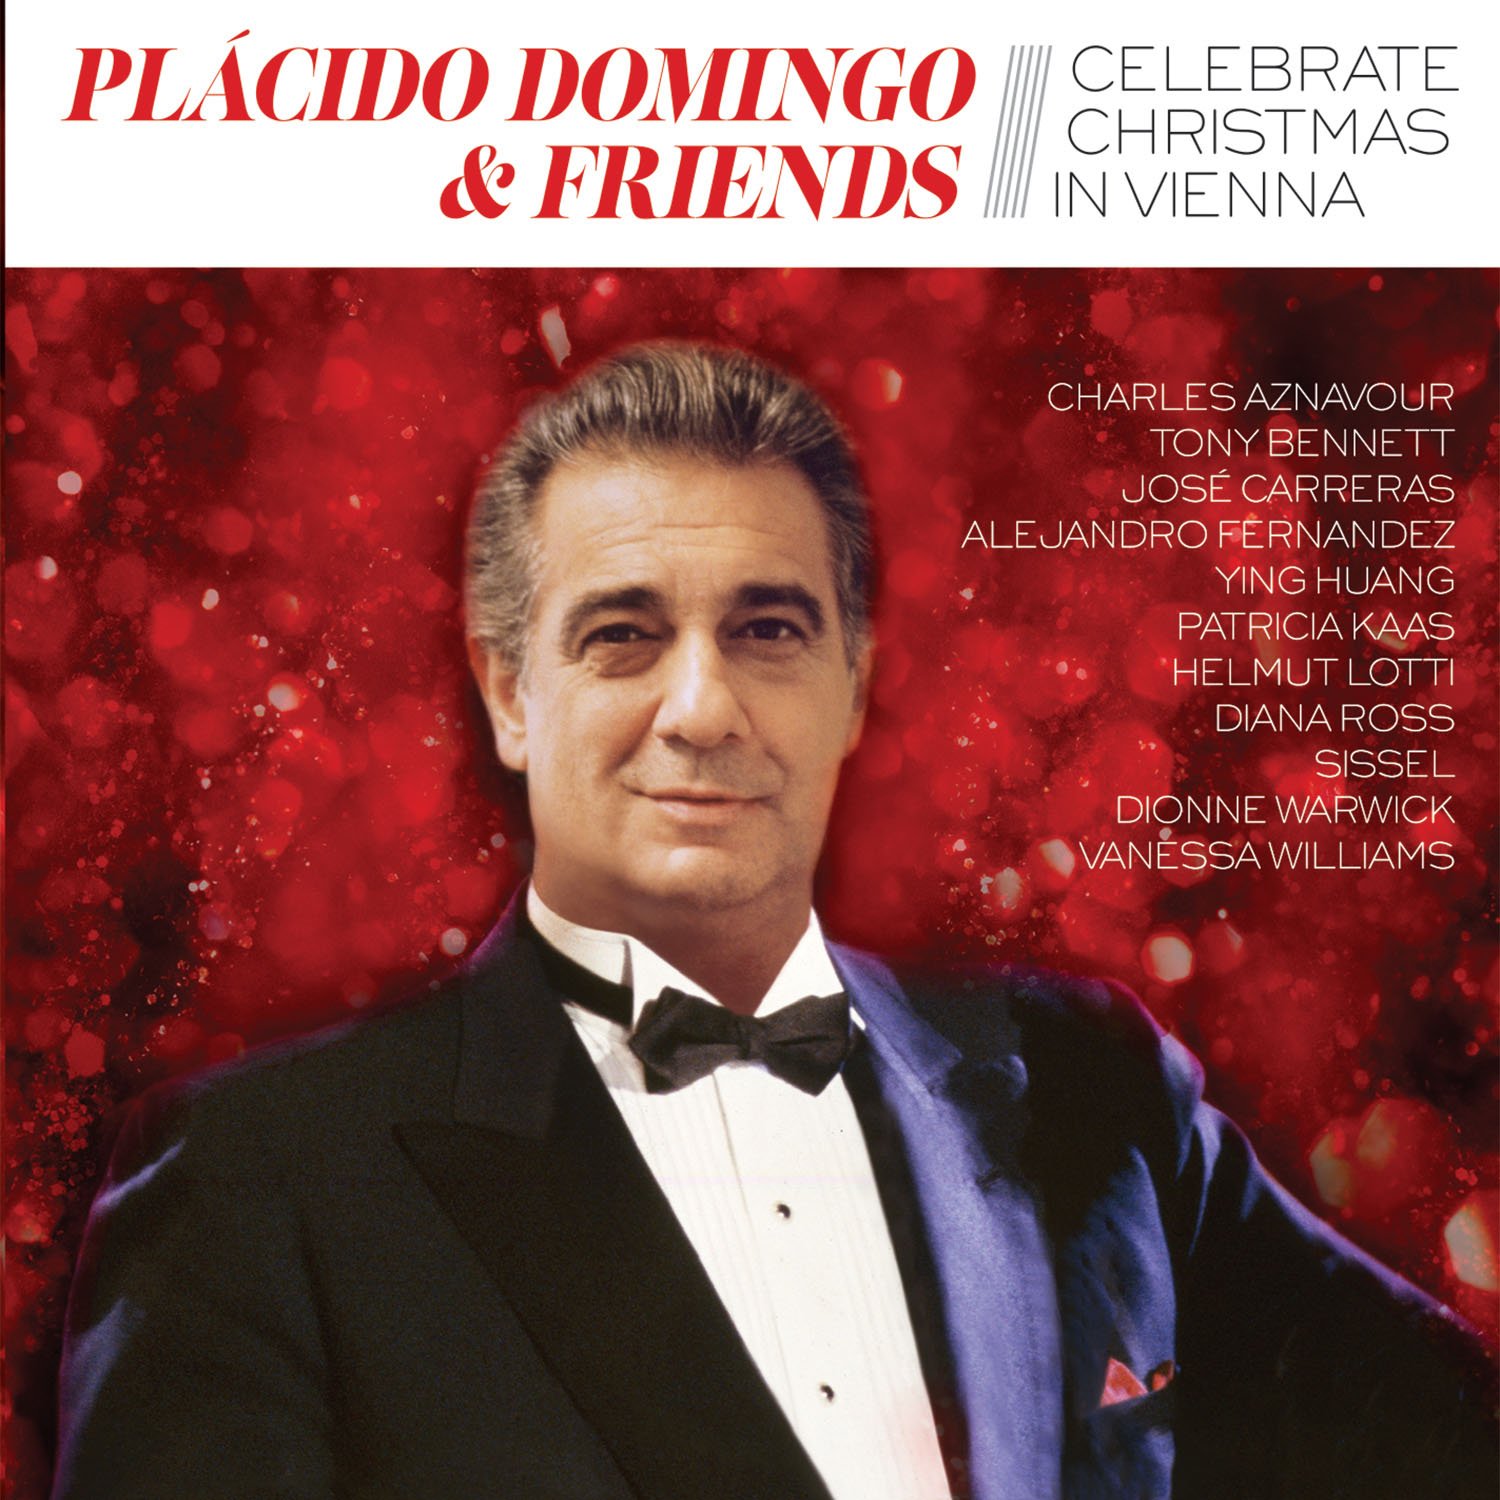 Placido Domingo & Friends celebrate Christmas in Vienna | Placido Domingo